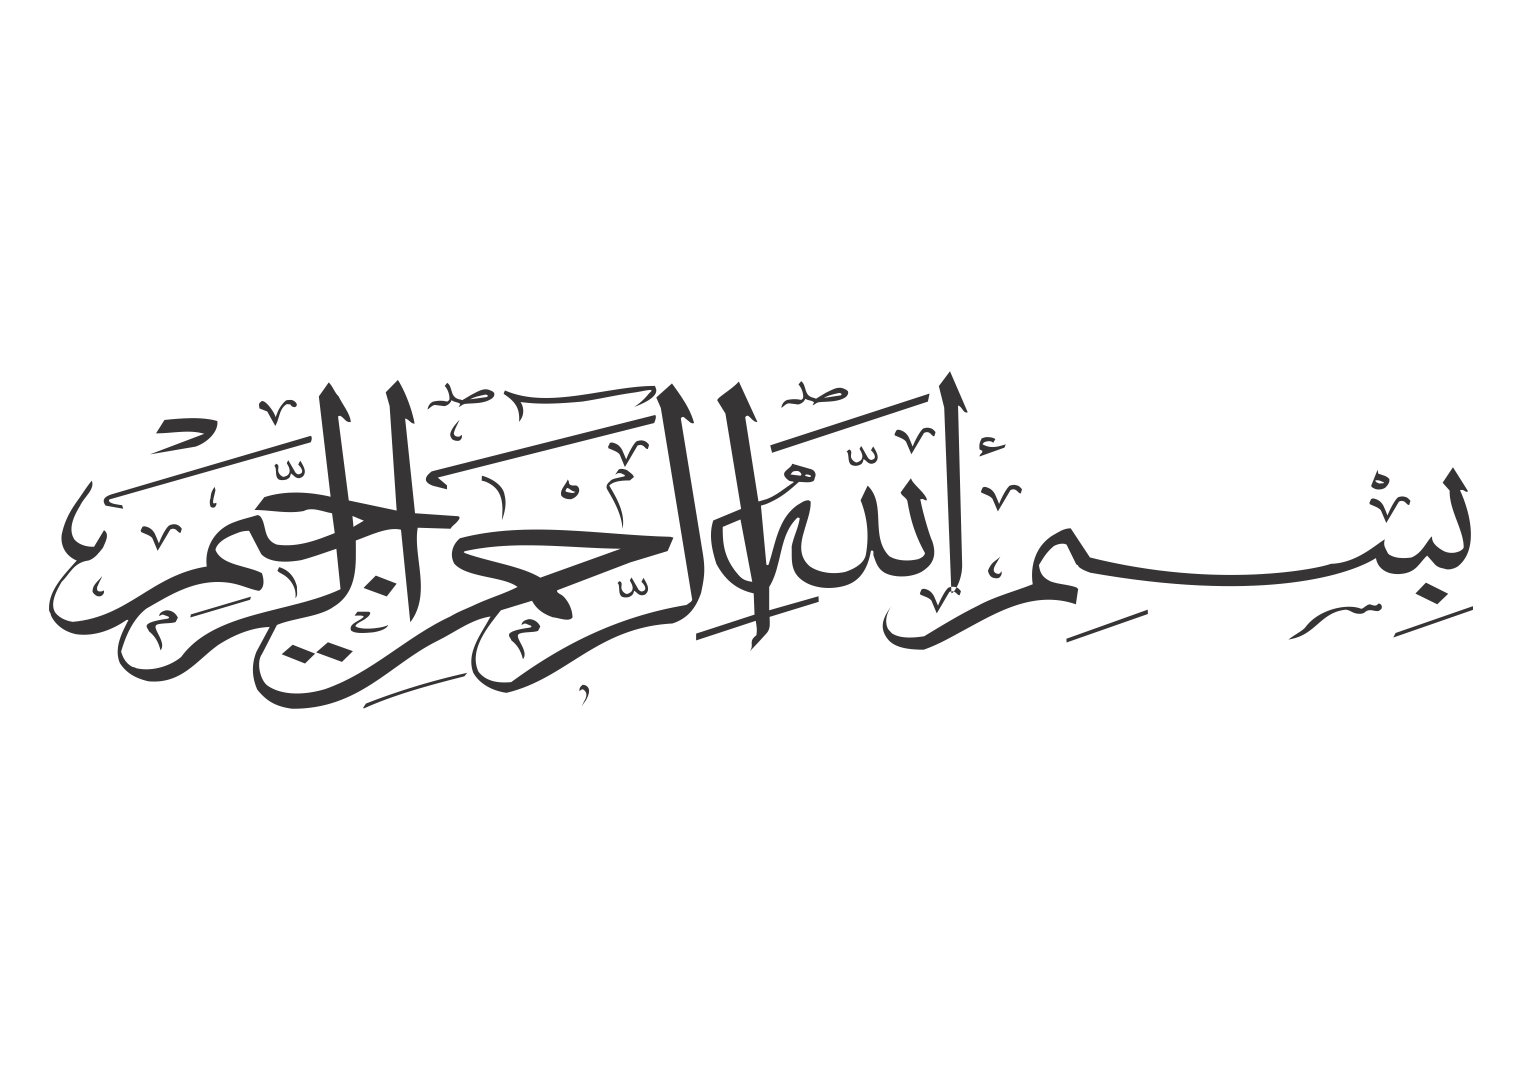 Бисмилла рахмани рахим. Каллиграфические надписи на арабском. Арабская каллиграфия Бисмиллях. Бисмилля на арабском. Исламская каллиграфия.